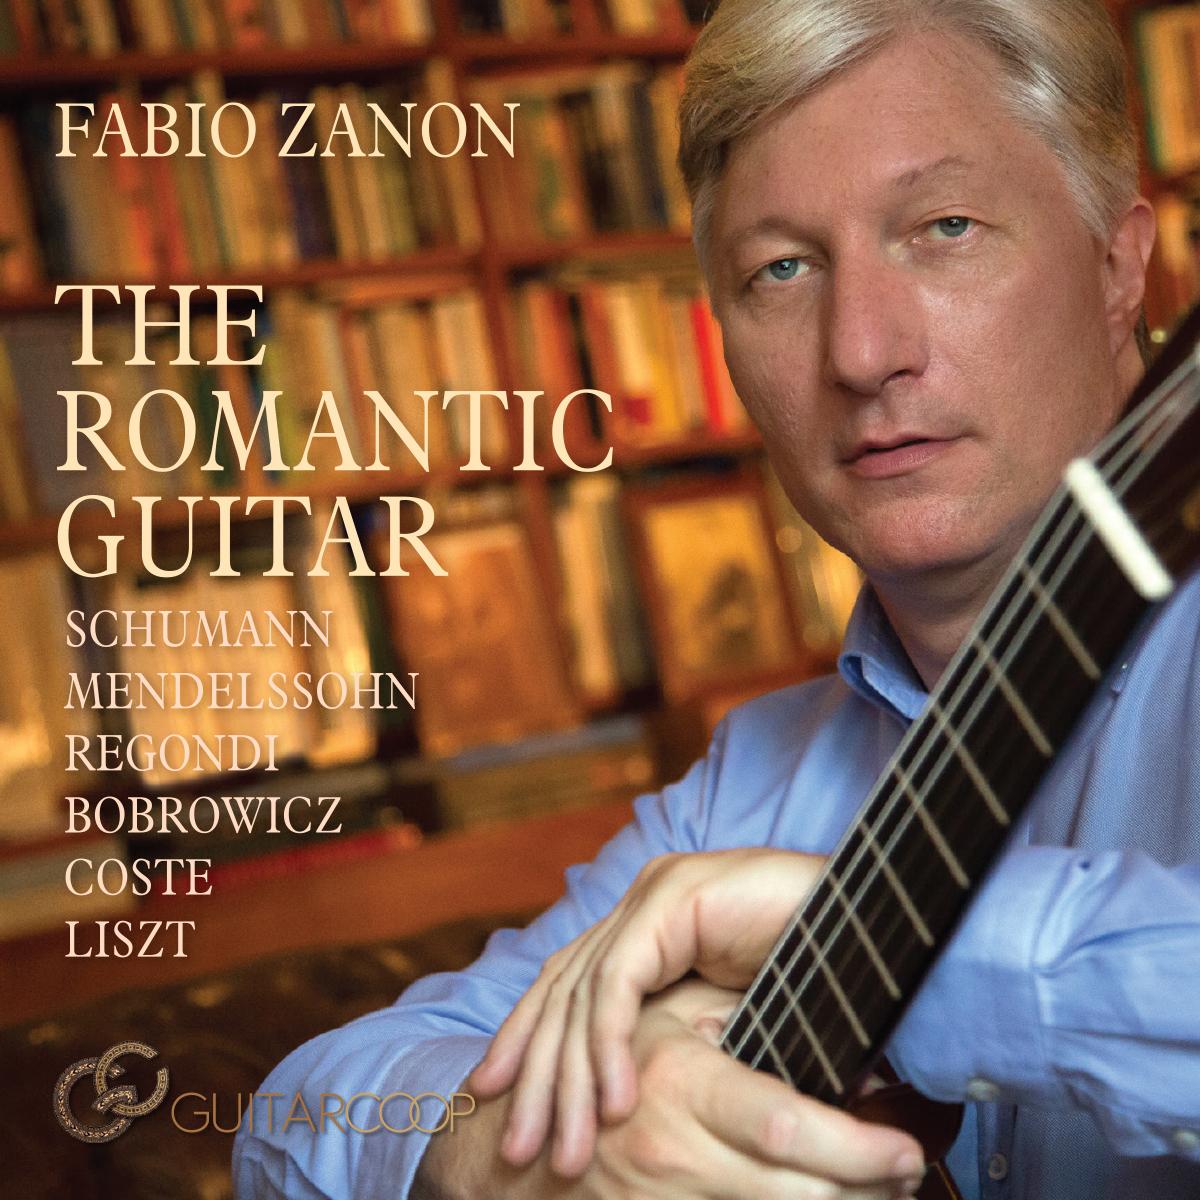 Fabio Zanon: The Romantic Guitar